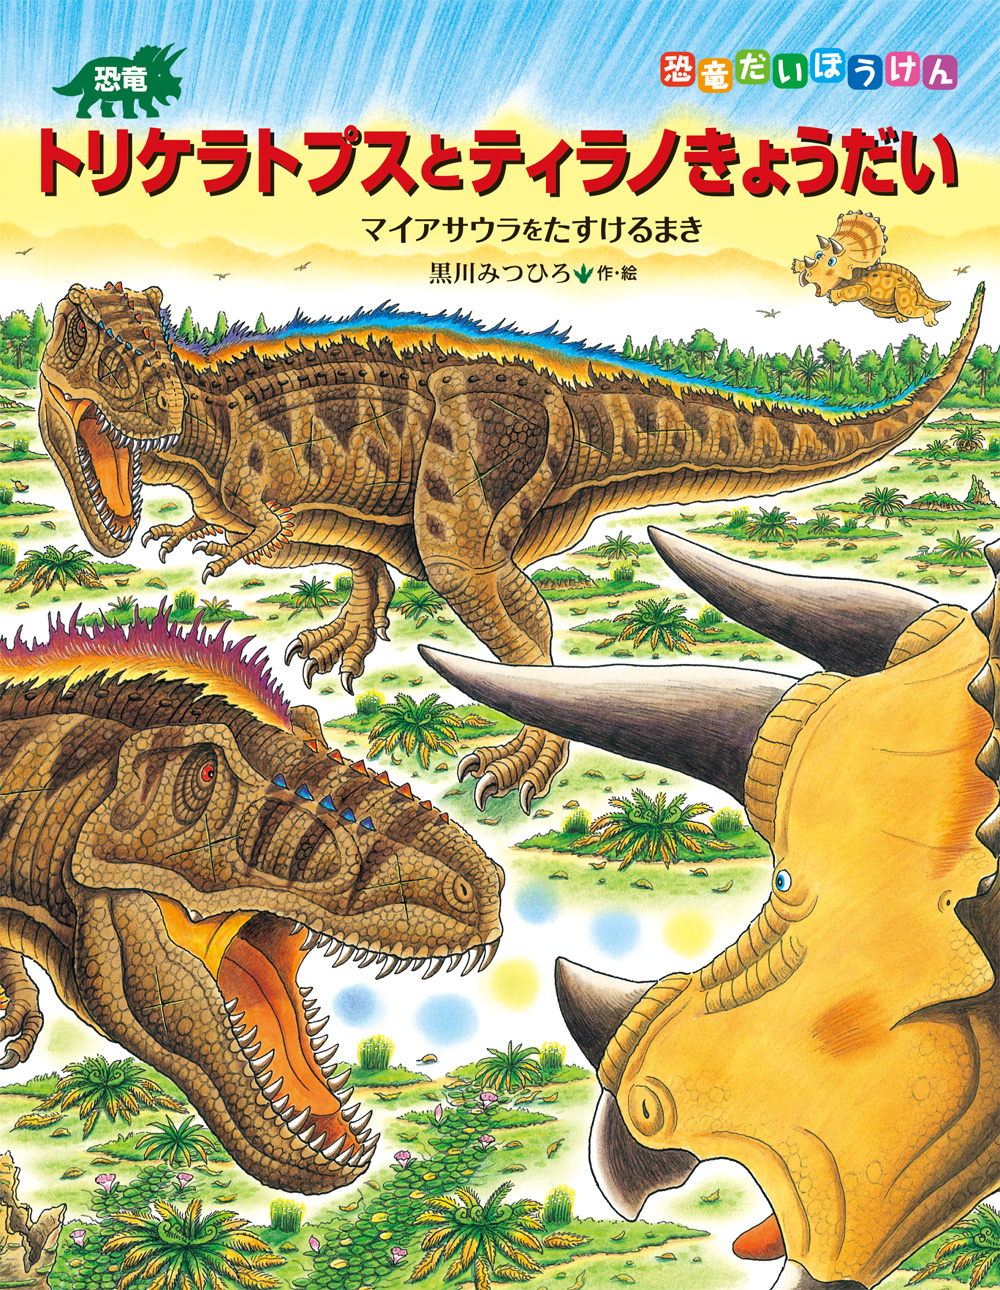 恐竜絵本作家・黒川みつひろさんの原画展が開催されます！【終了】